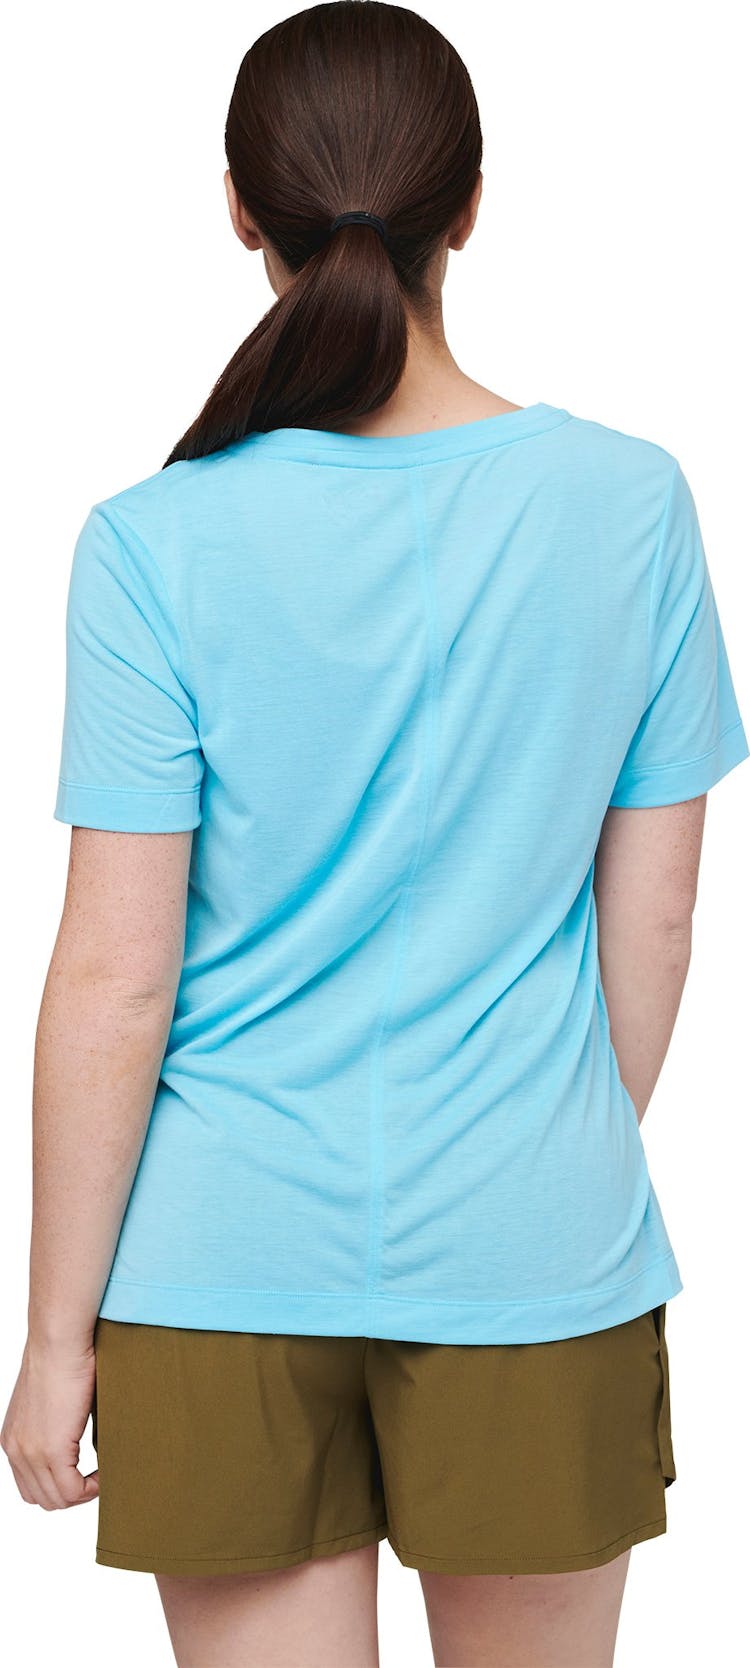 Numéro de l'image de la galerie de produits 2 pour le produit T-shirt de voyage Paseo - Femme